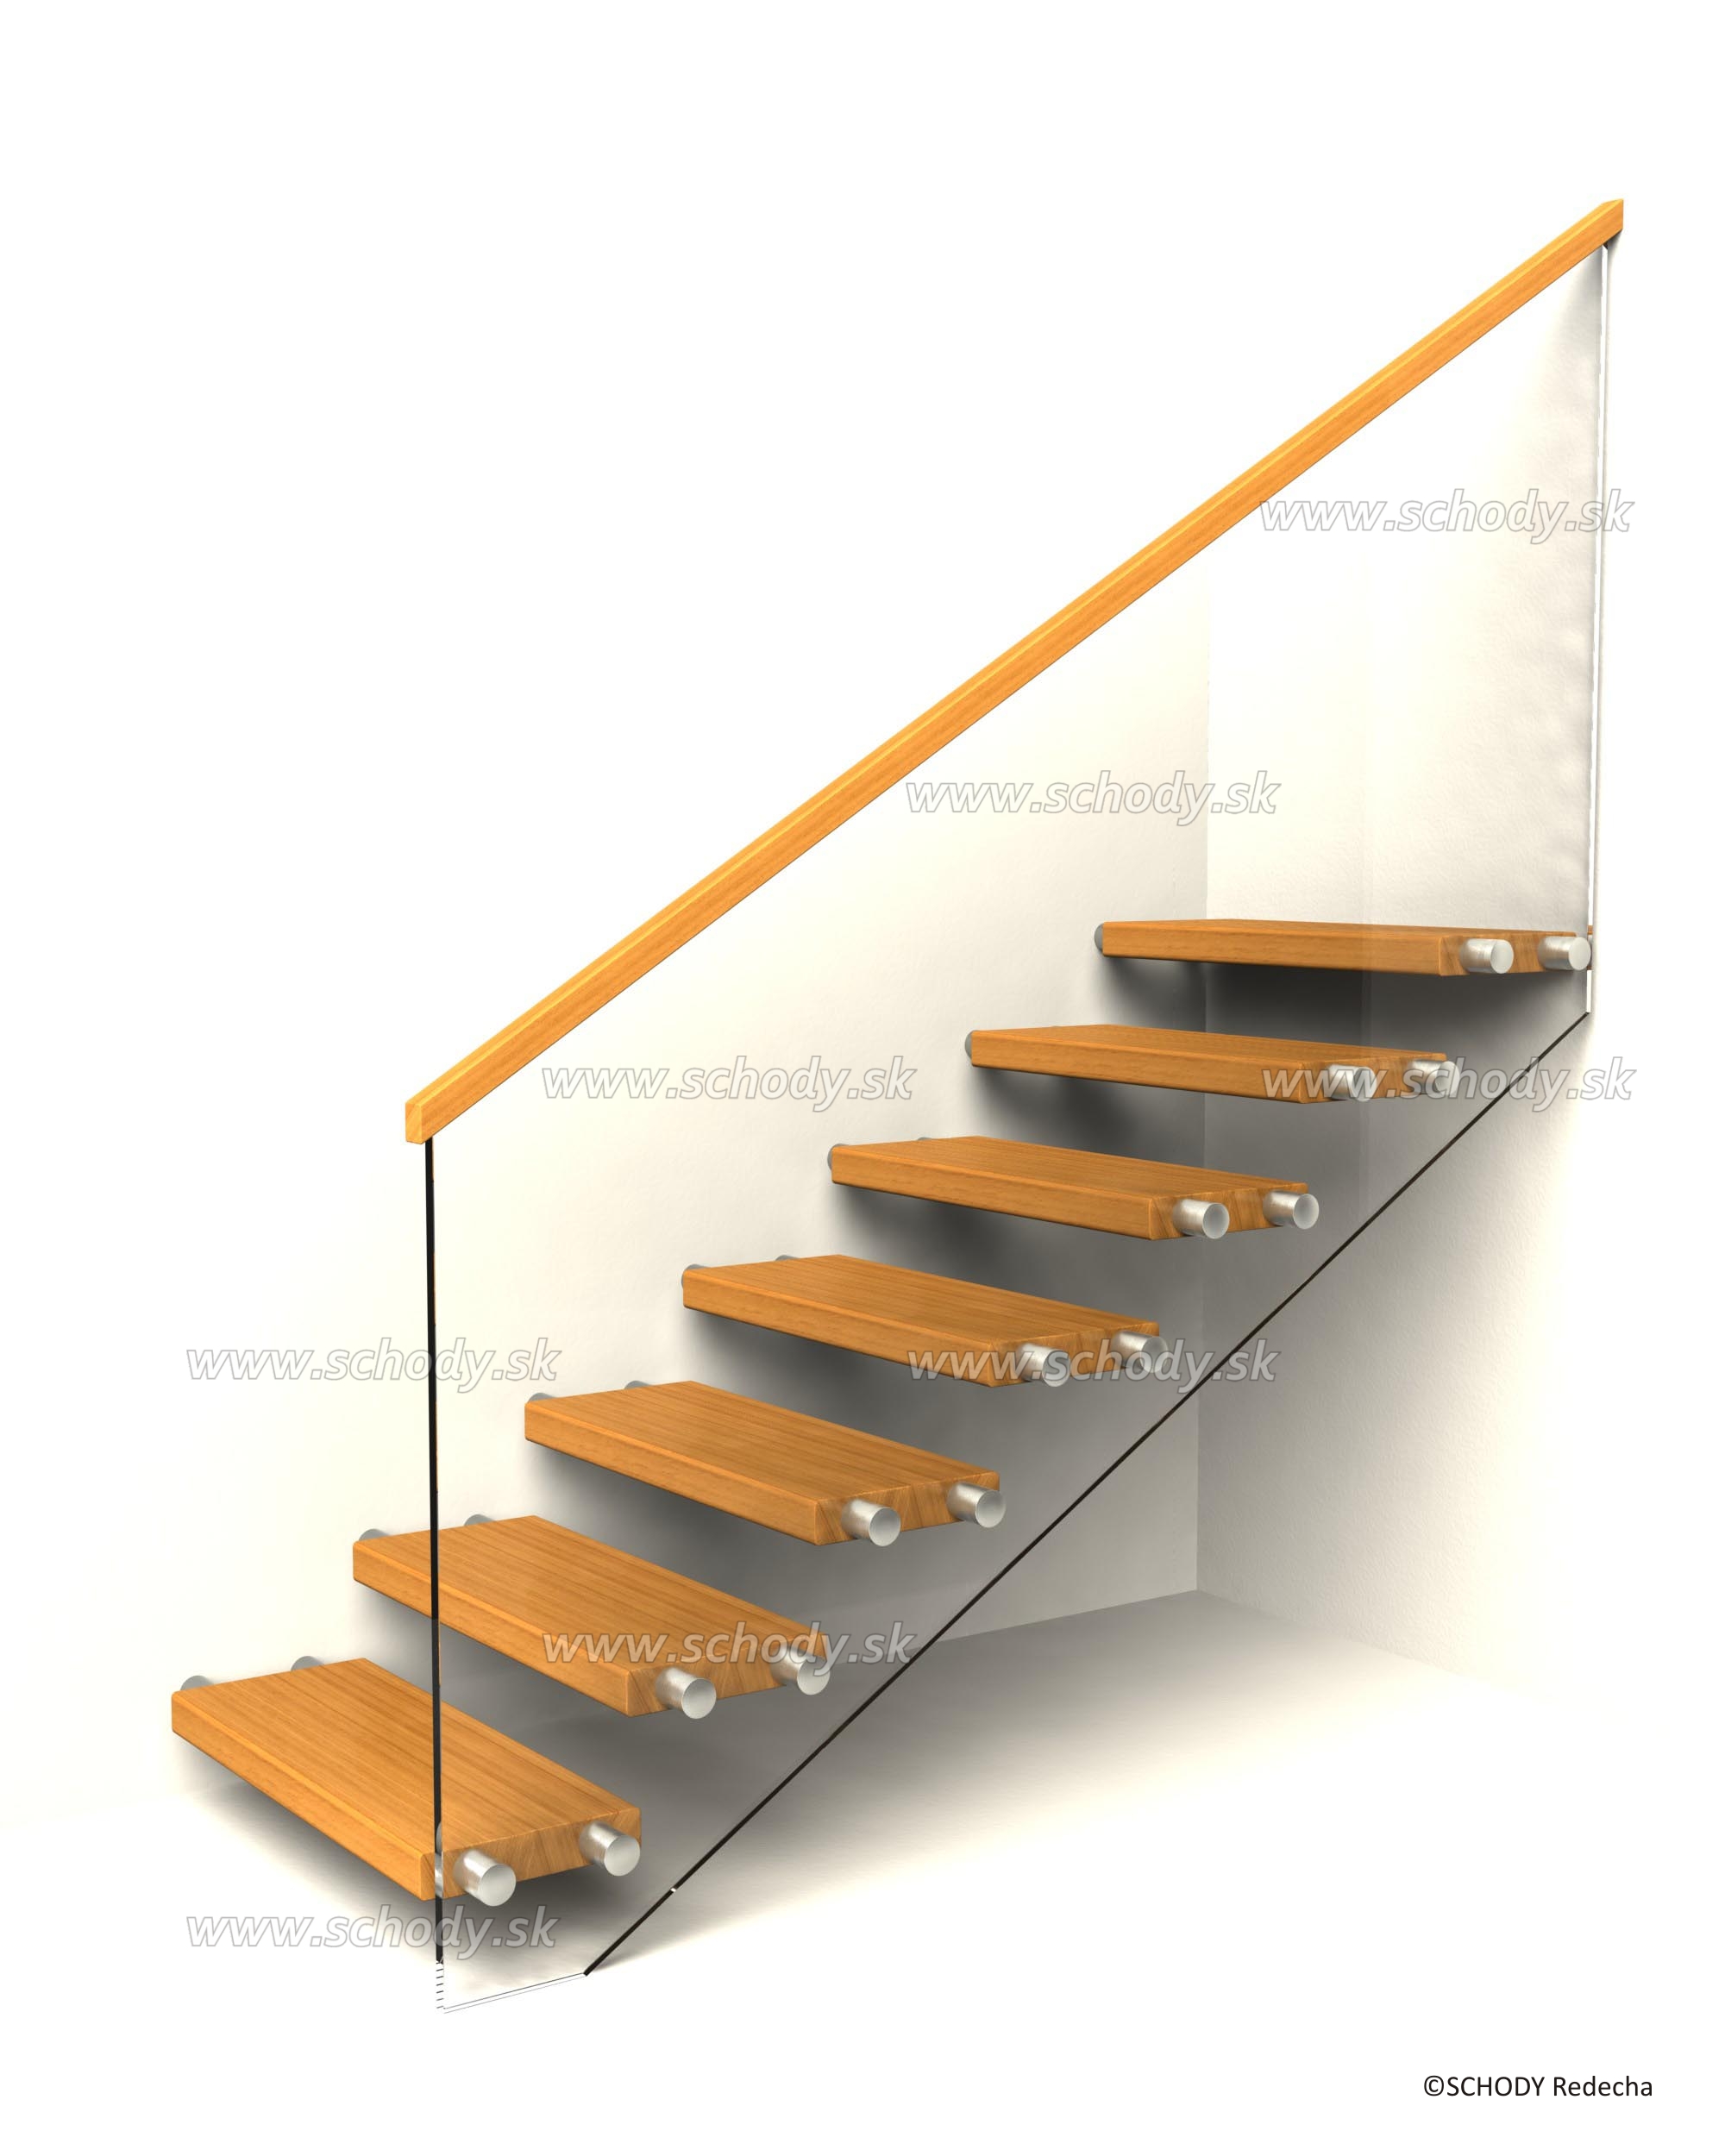 konstrukce schodiste schody X